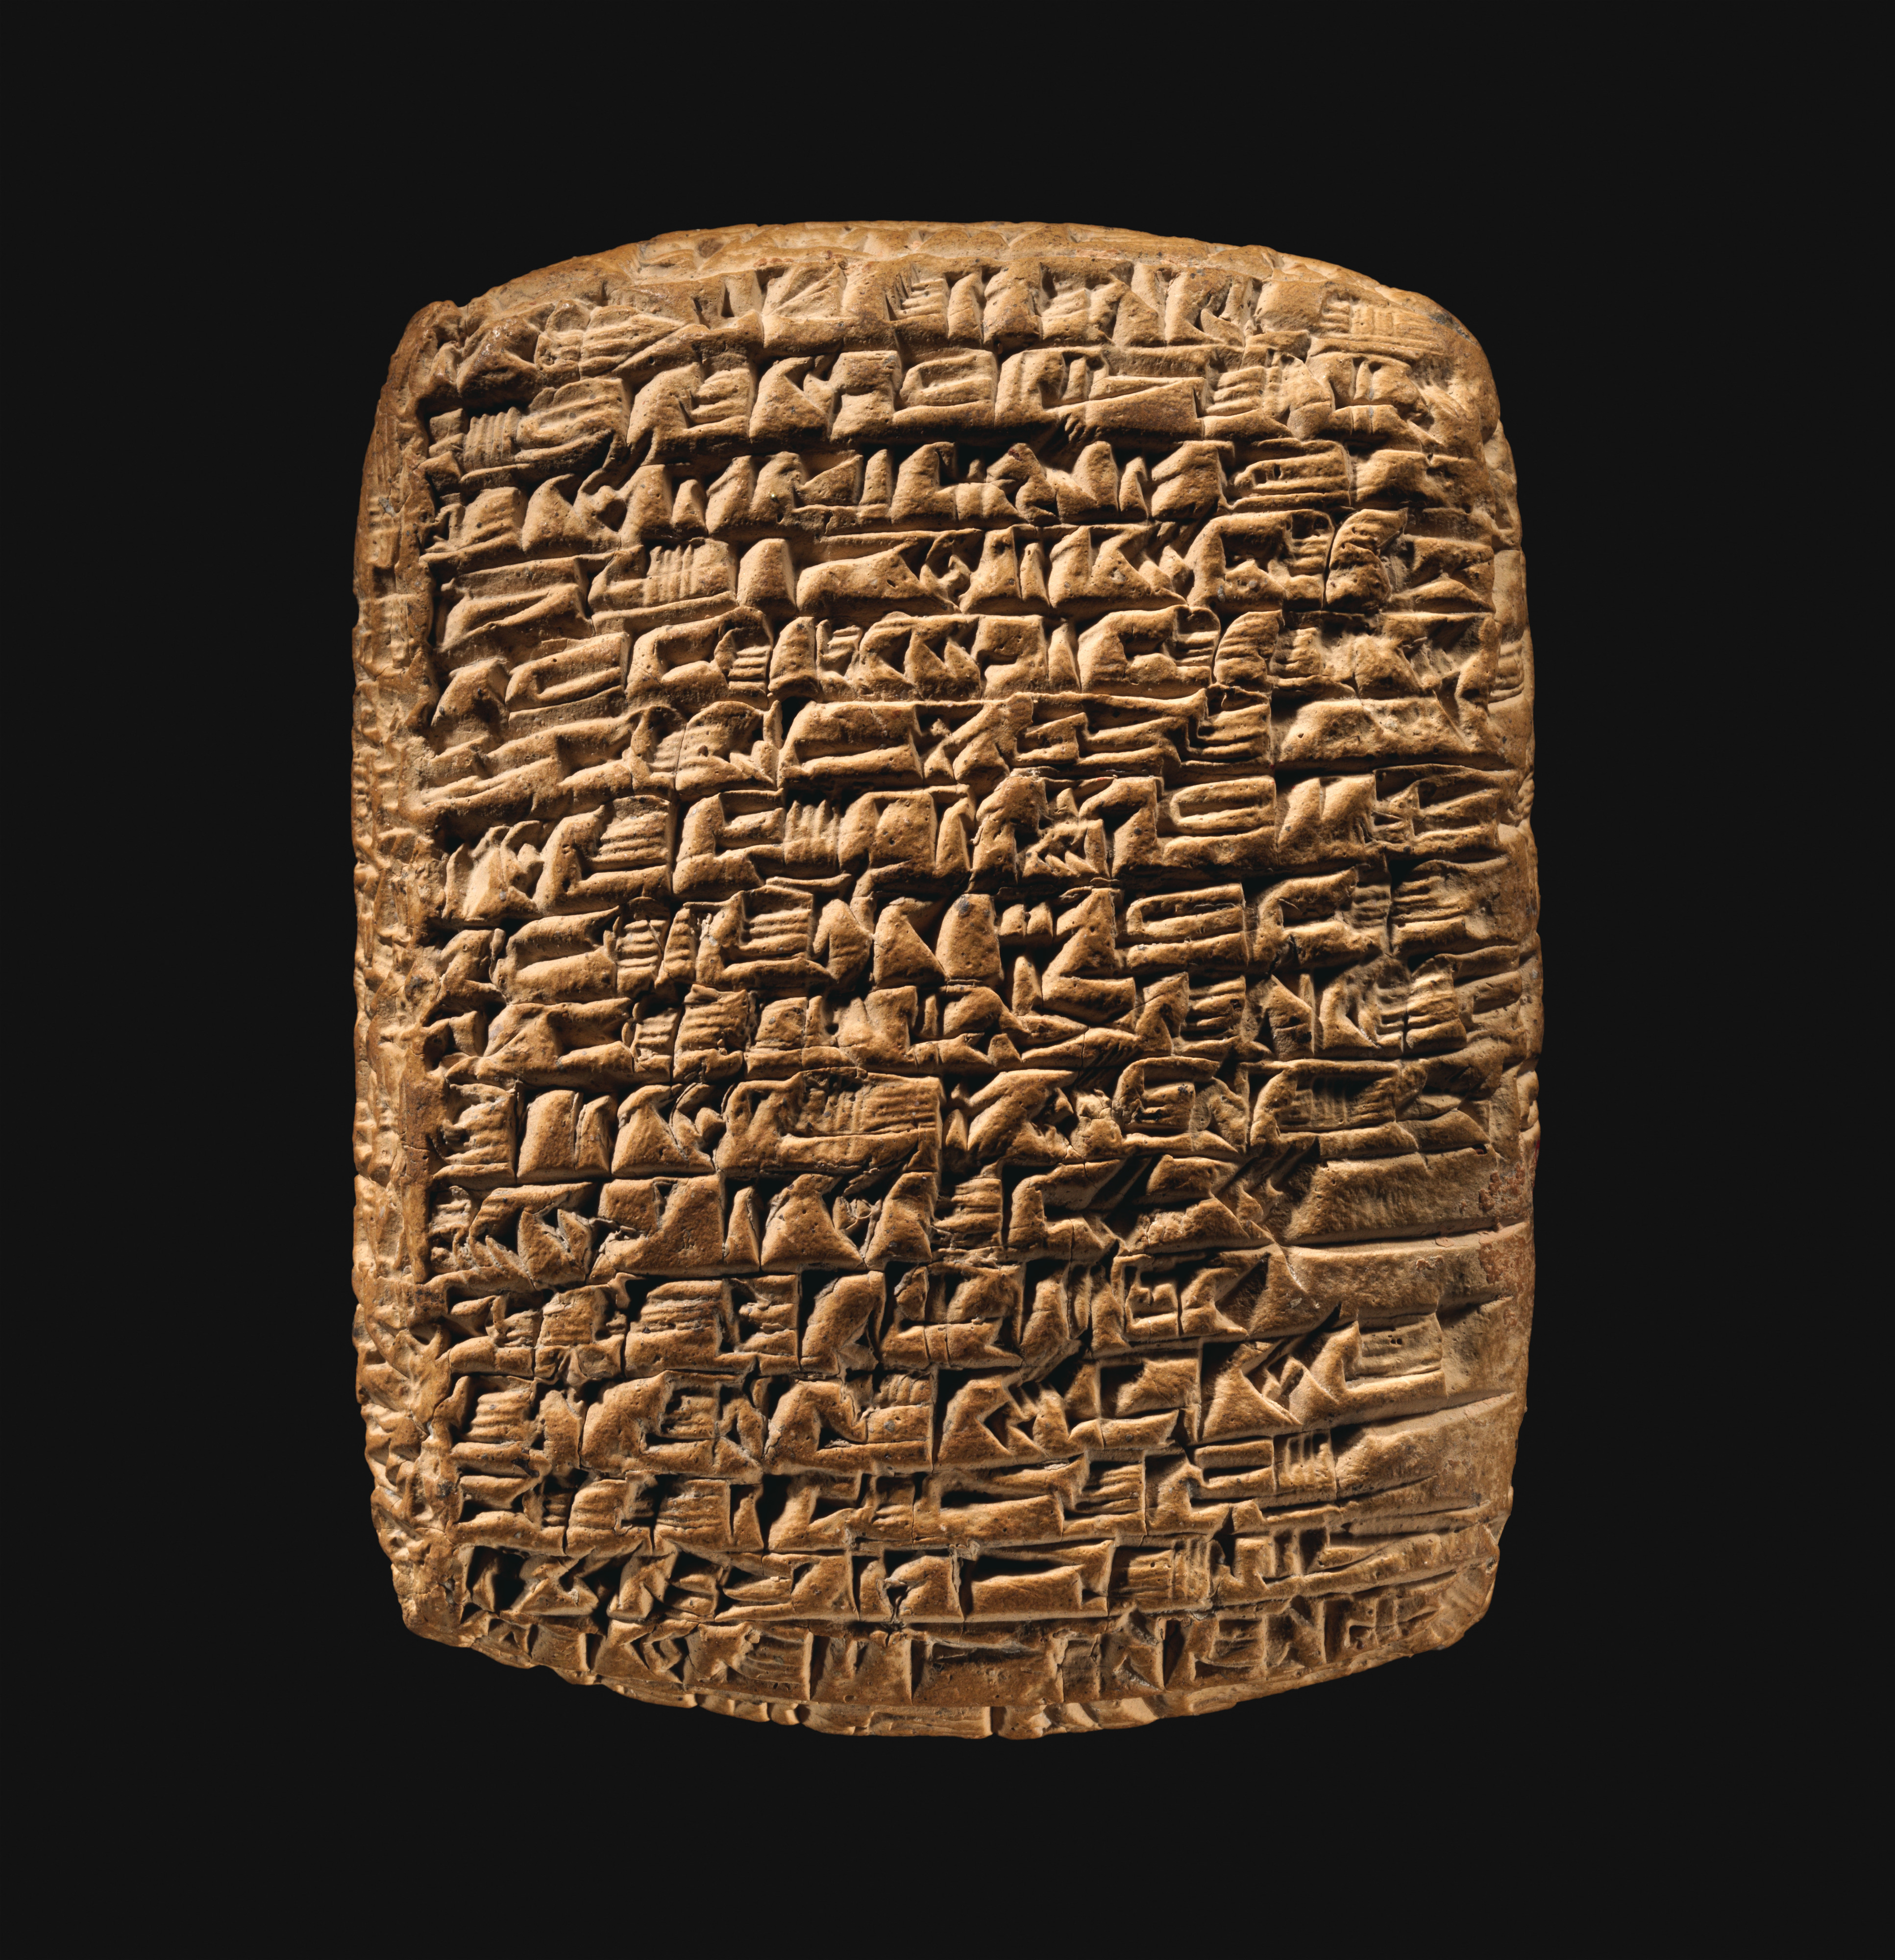 akkadian cuneiform alphabet